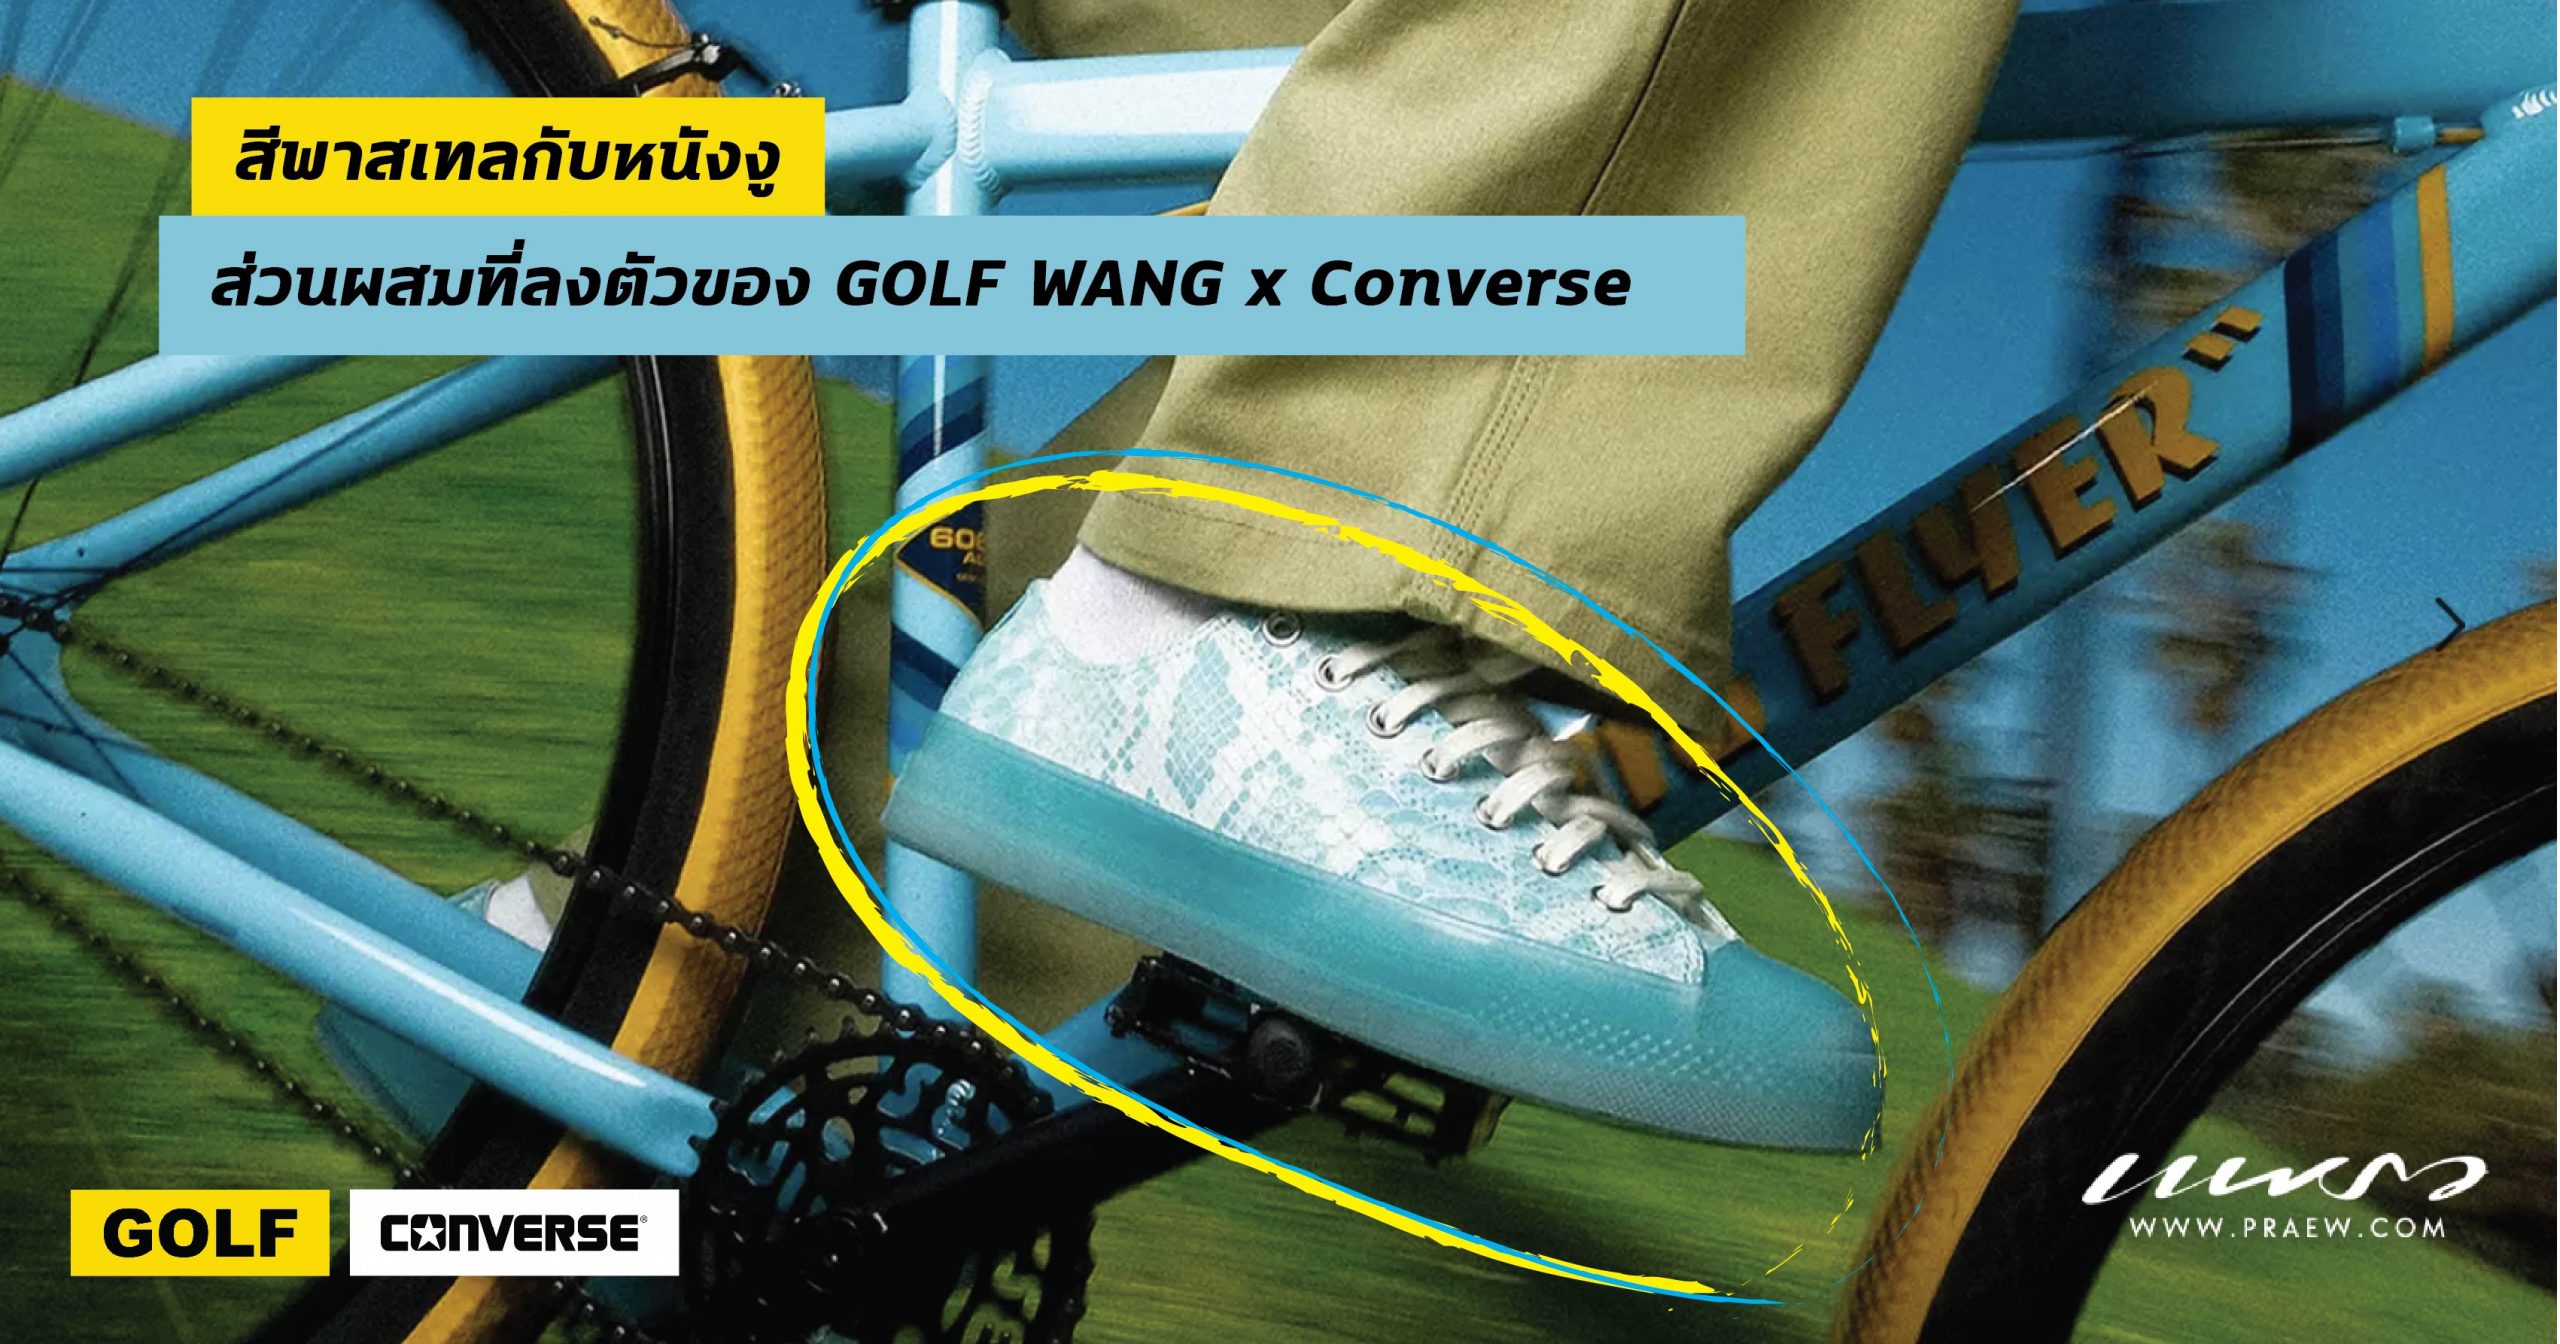 สีพาสเทลกับหนังงู ส่วนผสมที่ลงตัวของ GOLF WANG x Converse